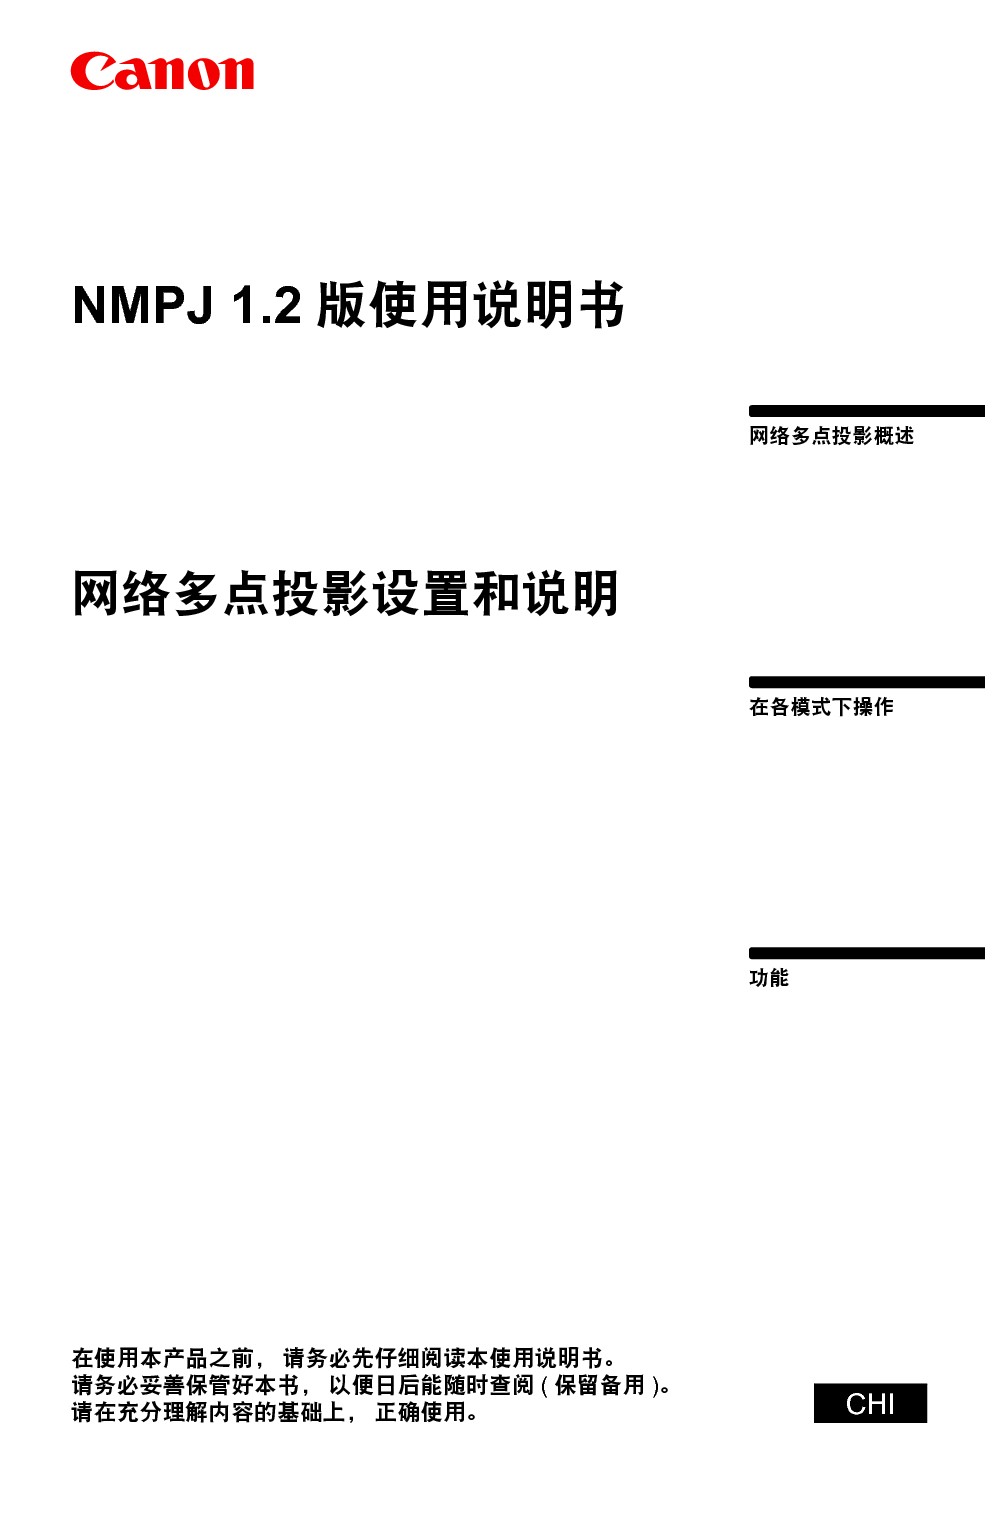 佳能 Canon NMPJ 1.2 网络多点投影 使用说明书 封面